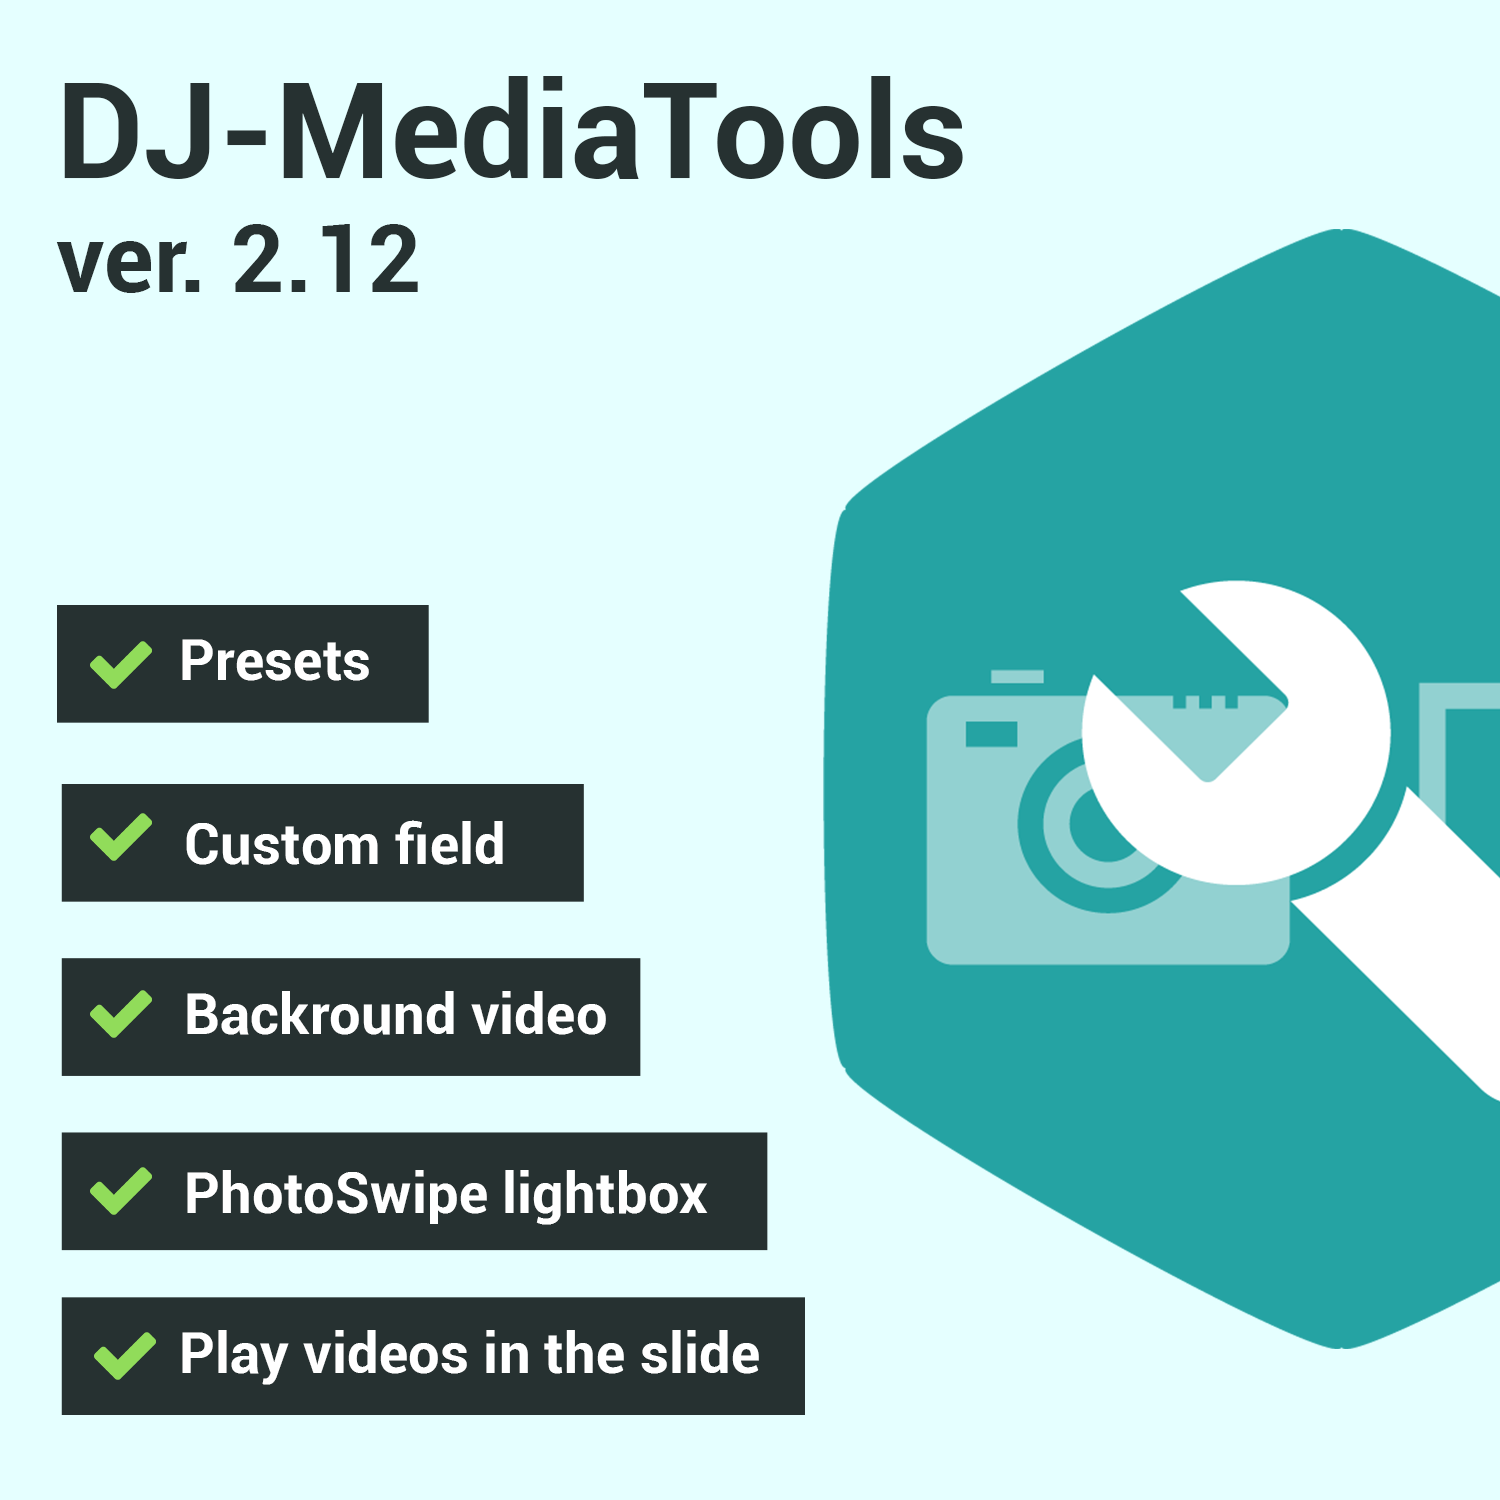 Joomla-Monster Joomla News: DJ-MediaTools version 2.12.0 is available